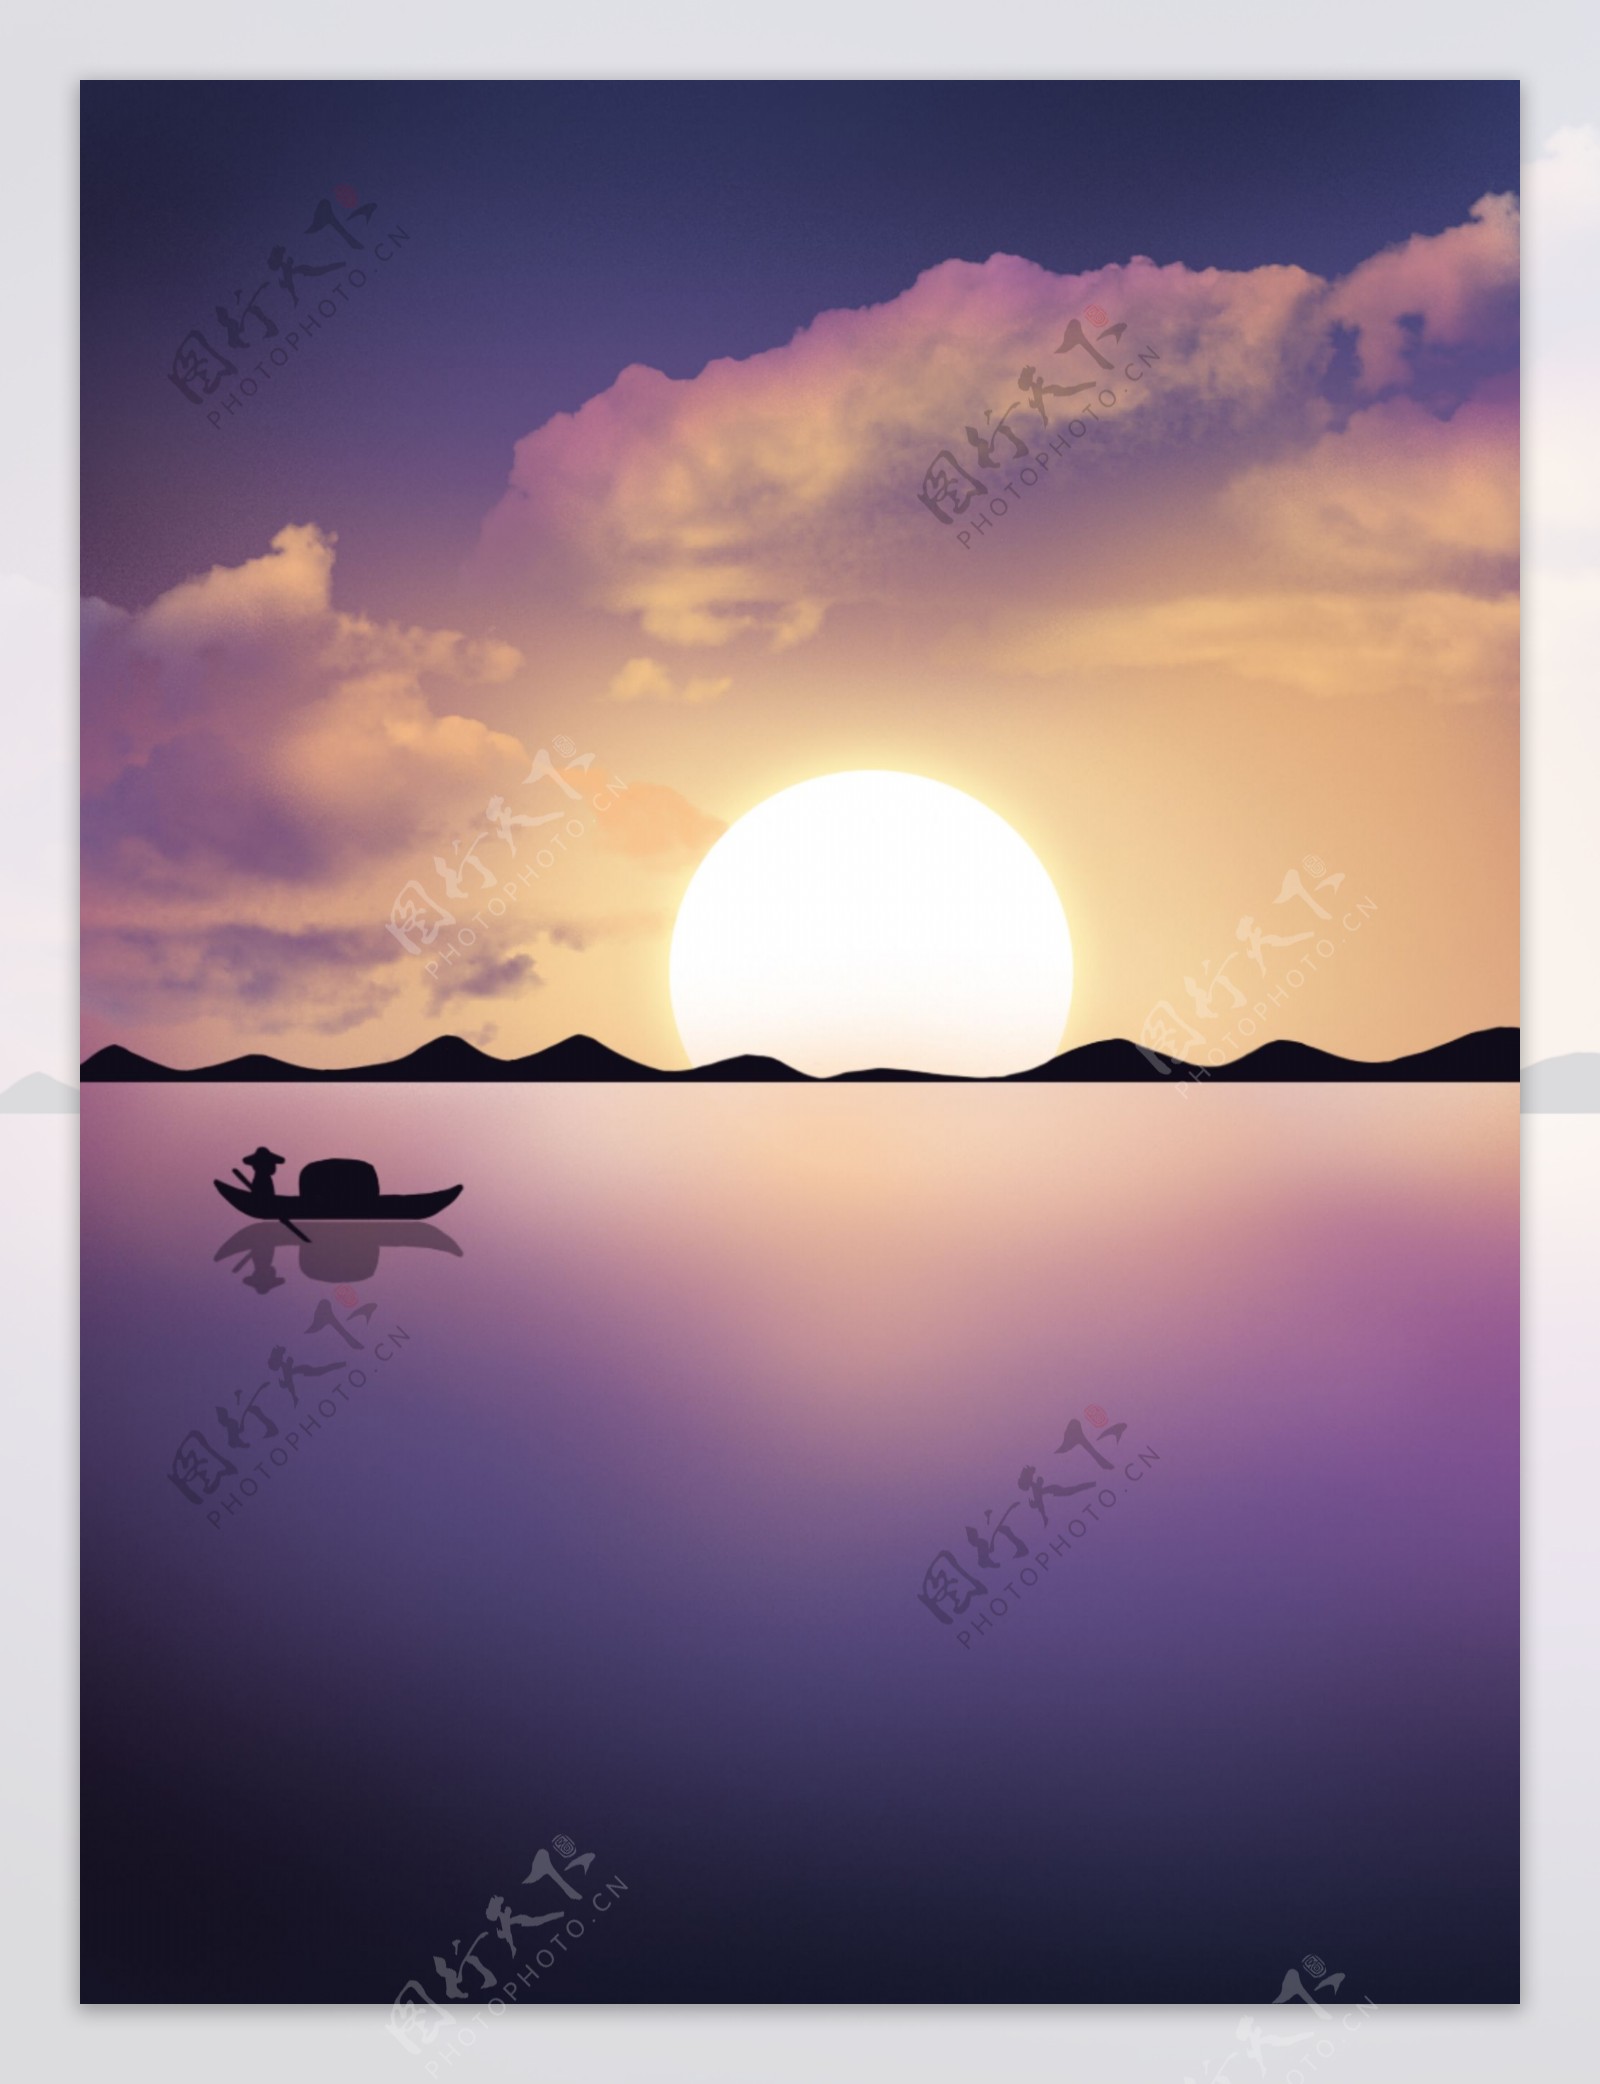 夕阳紫色湖面晚霞唯美通用背景